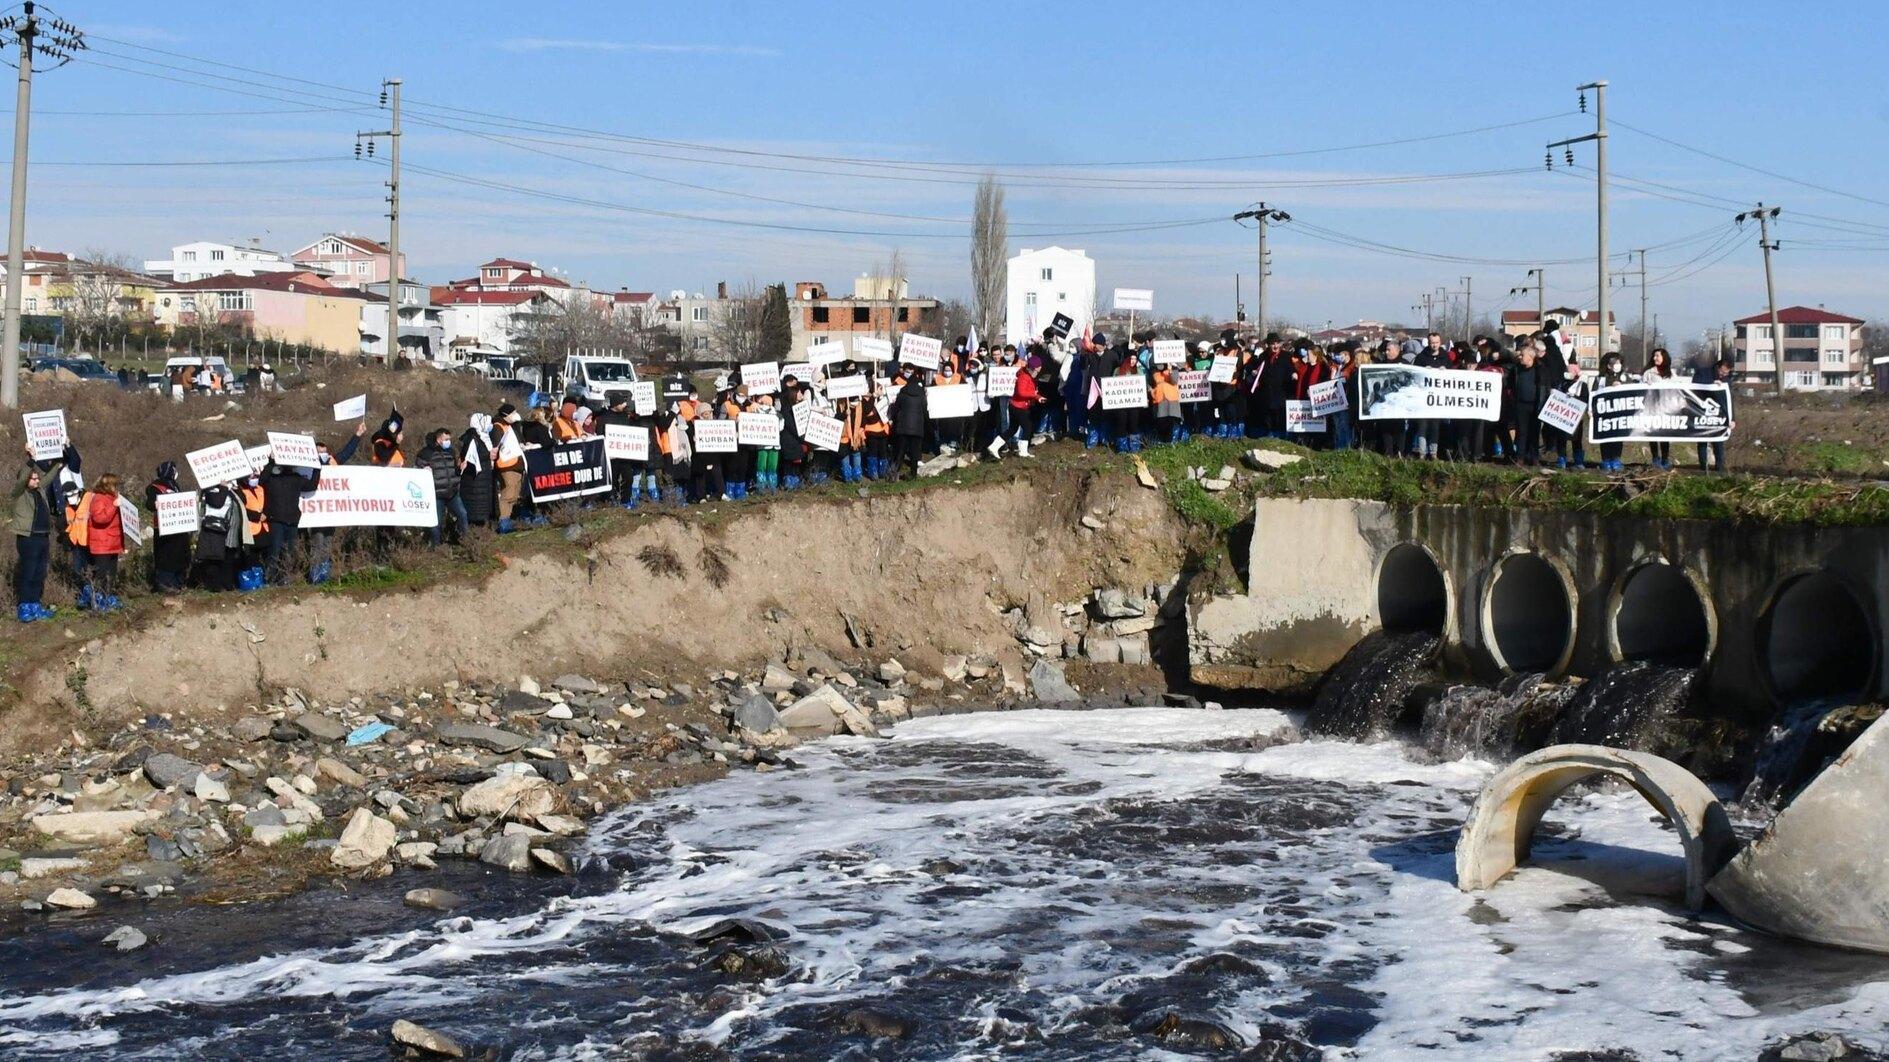 Stichting Kanker houdt protest tegen vervuilde rivier